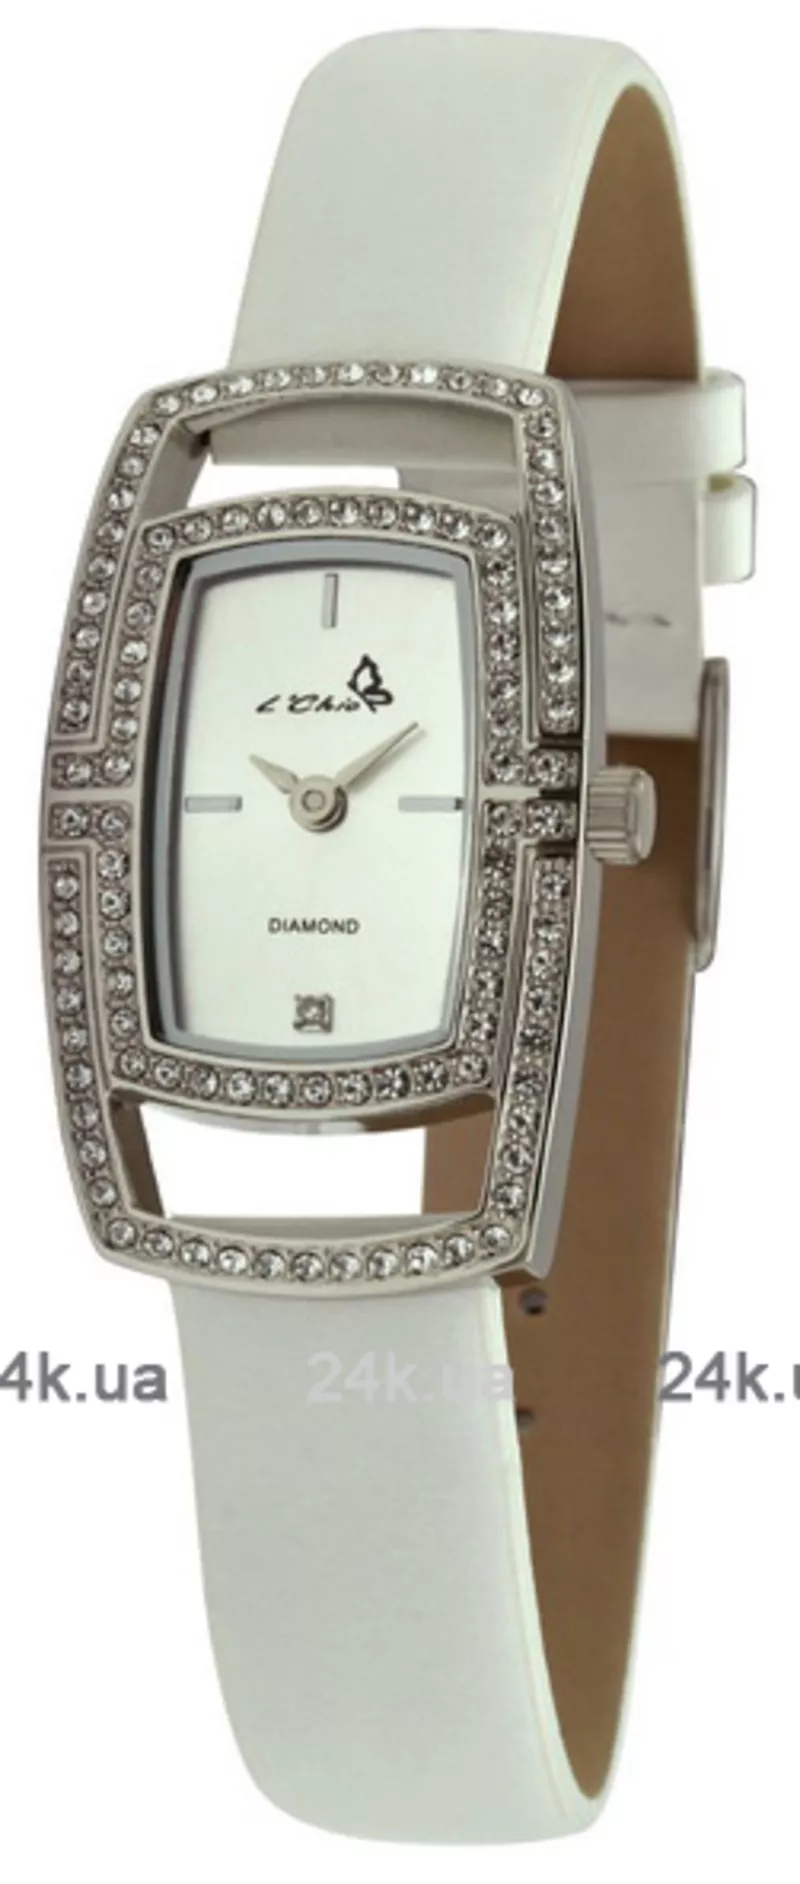 Часы Le Chic CL 1448D S